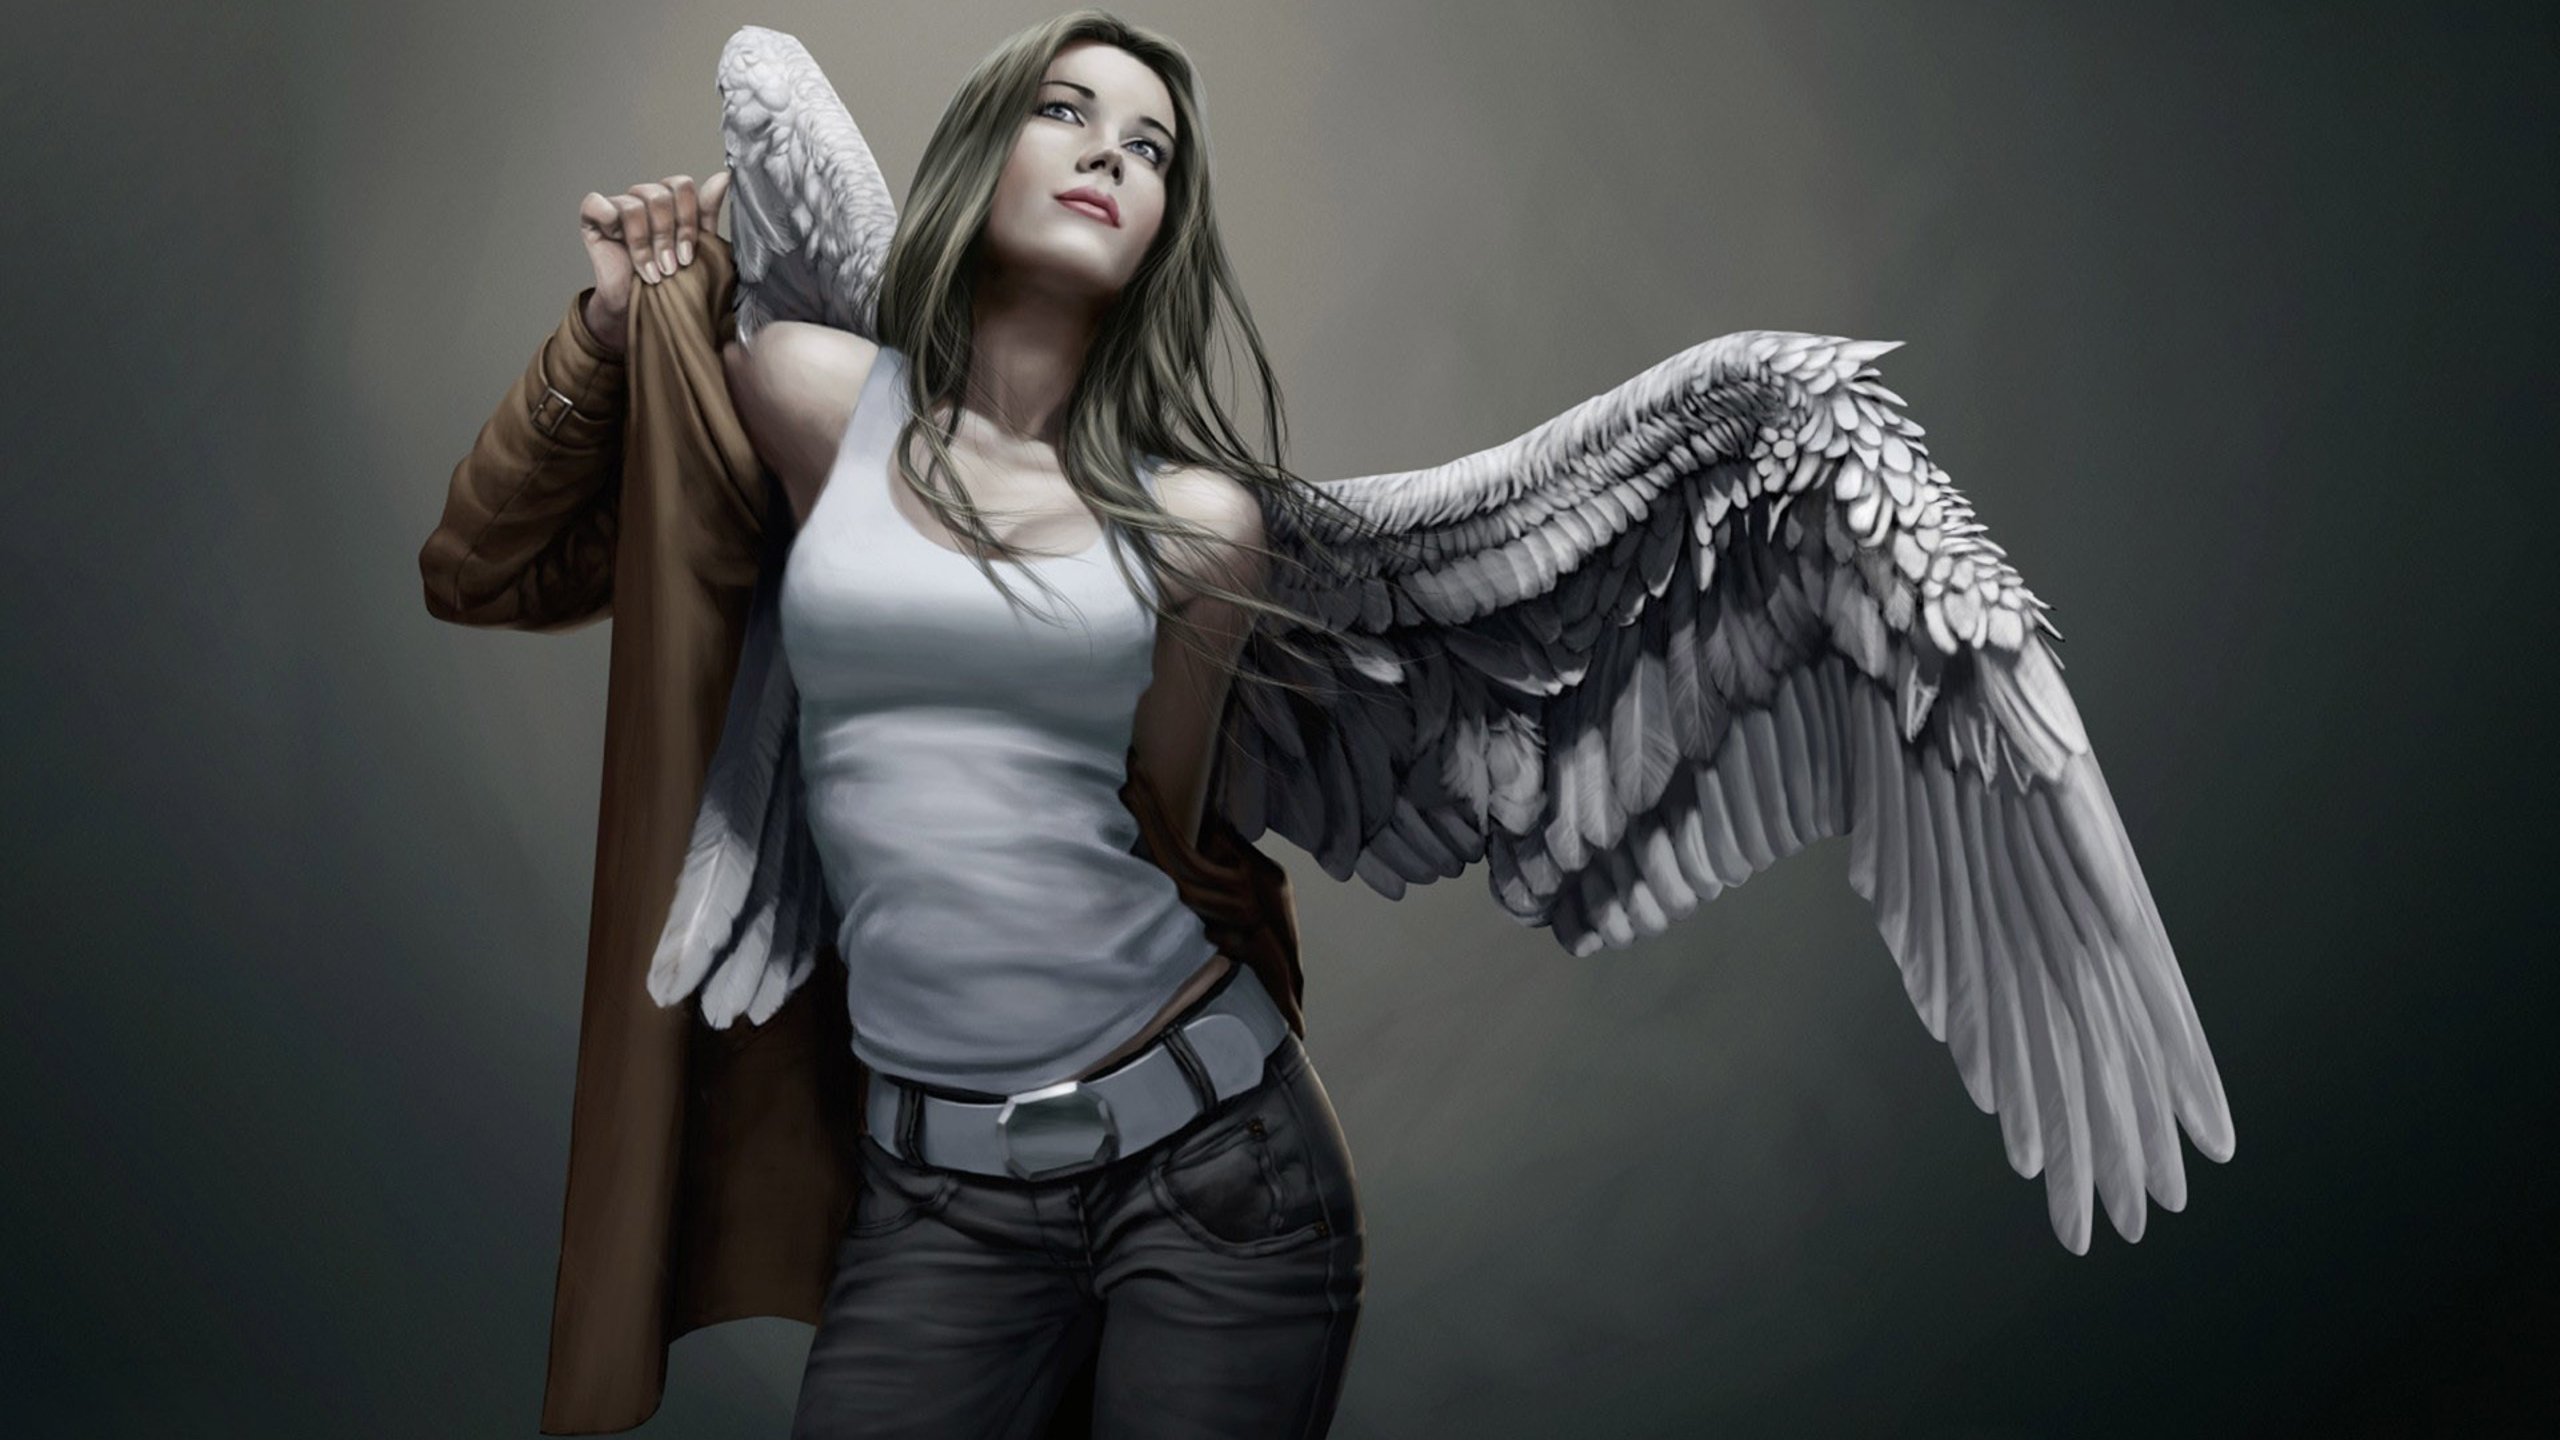 Angels women. Энн Энджел 1200. Разиэль ангел. Девушка с крыльями. Девушка - ангел.